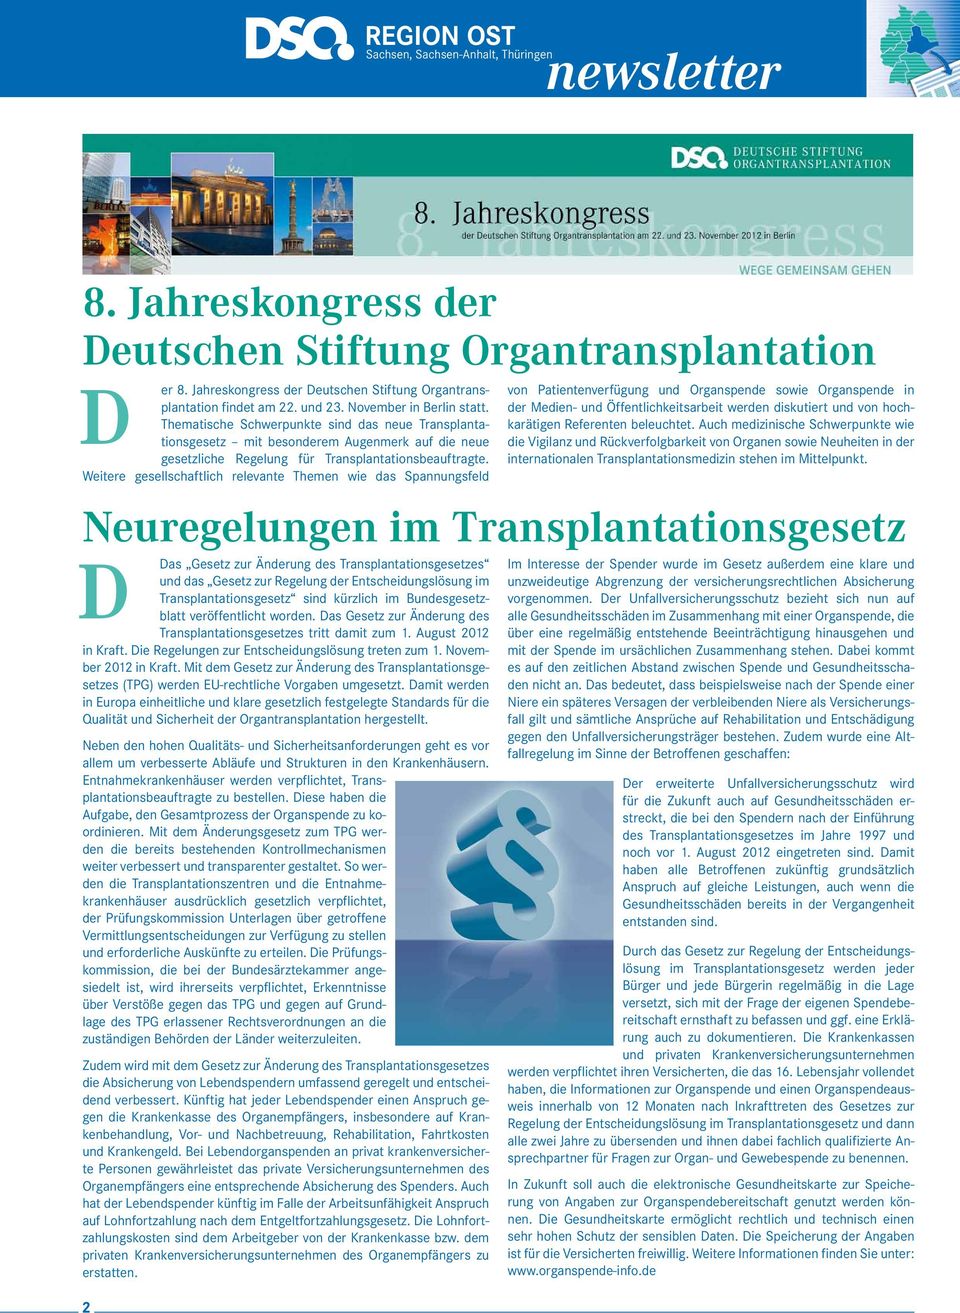 Weitere gesellschaftlich relevante Themen wie das Spannungsfeld Das Gesetz zur Änderung des Transplantationsgesetzes und das Gesetz zur Regelung der Entscheidungslösung im Transplantationsgesetz sind